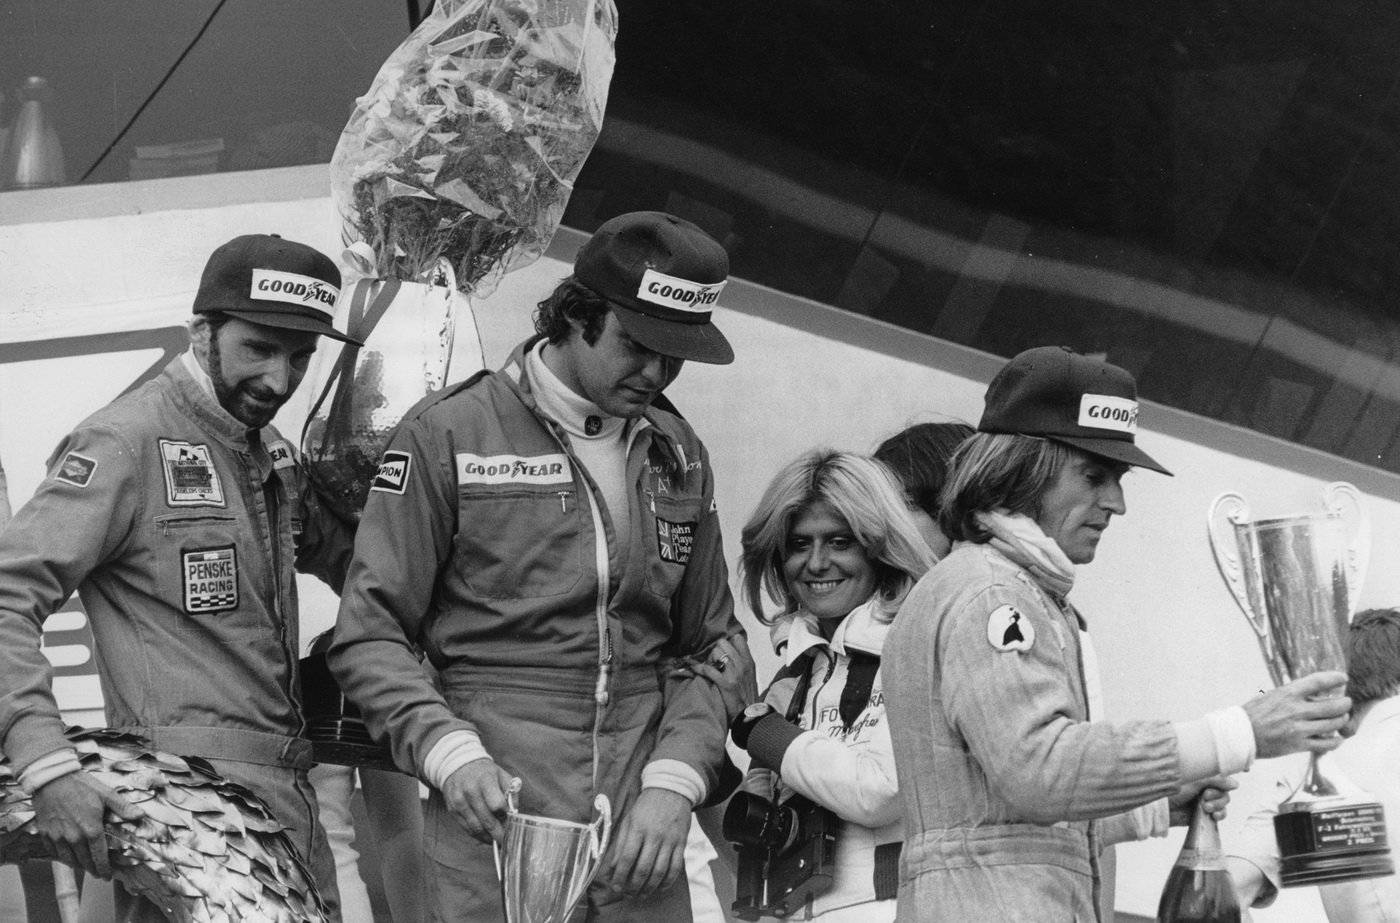 Grand Prix Rakouska 1976 - Watson naposledy jako vousatý pilot. Spolu s ním na stupních vítězů Gunnar Nilsson (uprostřed) a Jacques Laffite (vpravo)